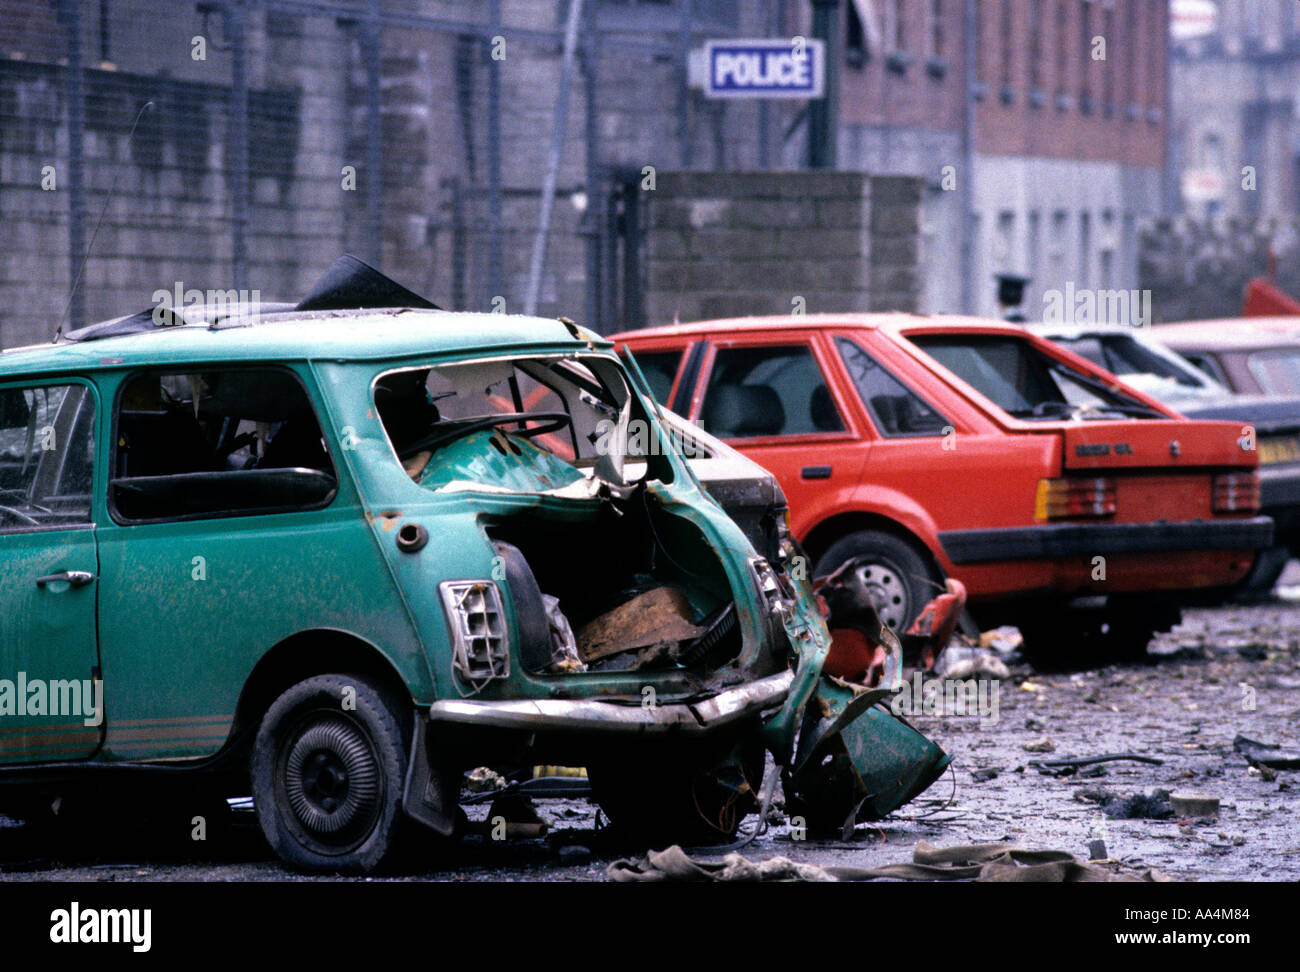 NEWRY BOMBARDAMENTO IRLANDA DEL NORD 28 FEB 1985. 9 RUC poliziotti sono morti quando l'IRA a Malta ha bombardato la loro stazione di polizia a Newry Foto Stock